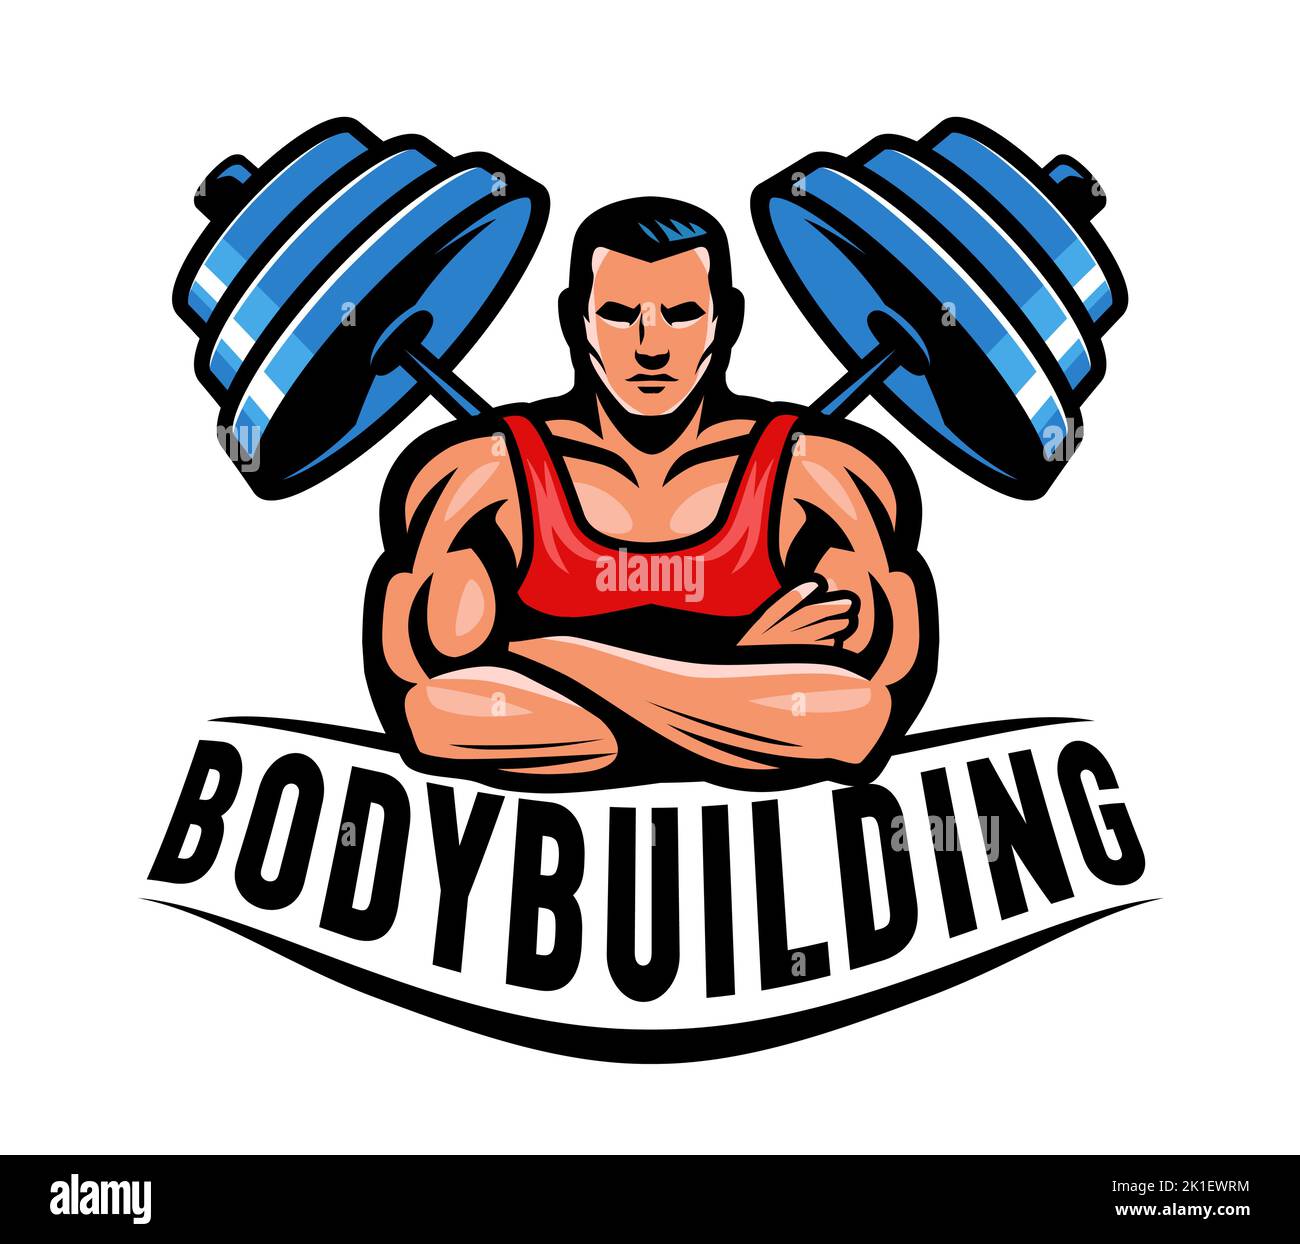 Muscular bodybuilder and barbell emblem. Bodybuilding logo or badge. Gym symbol vector illustration Stock Vector